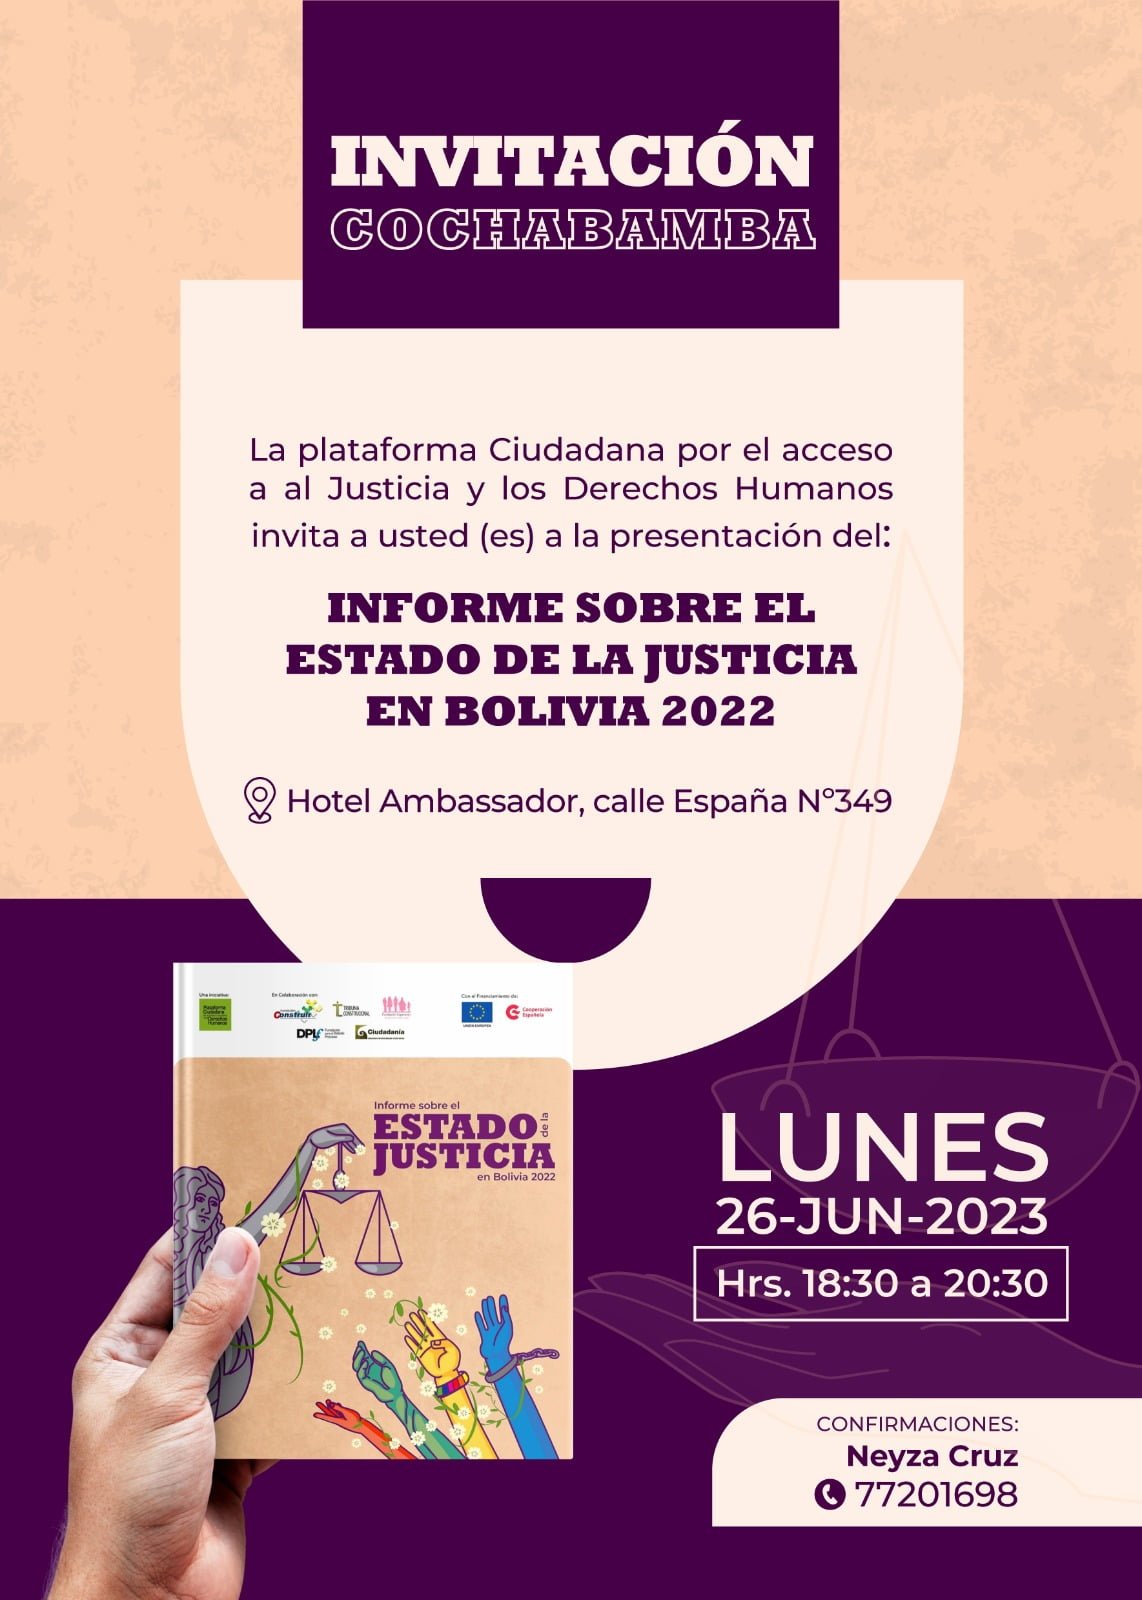 Invitación-Cochabamba:Estado de la Justicia en Bolivia 2022